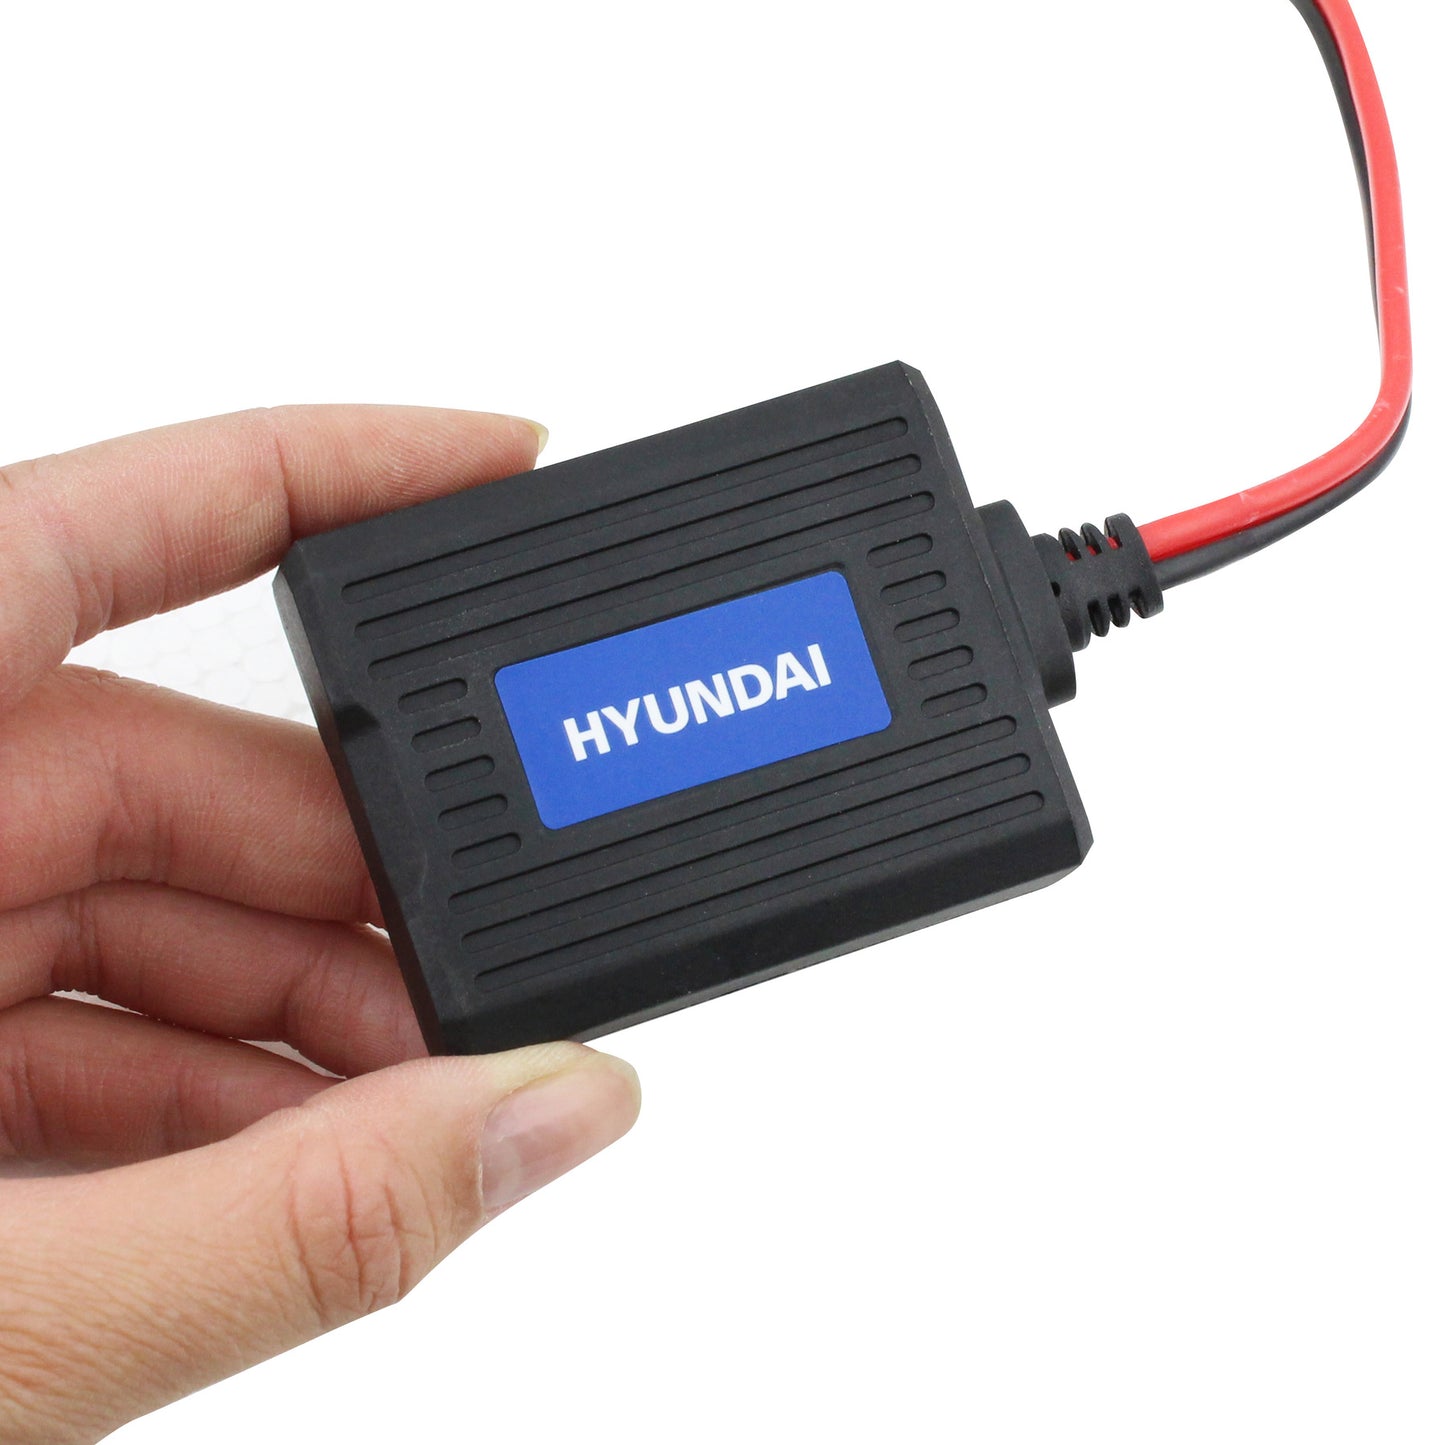 Hyundai HYBM-2 12v/6v Bluetooth Battery Monitor